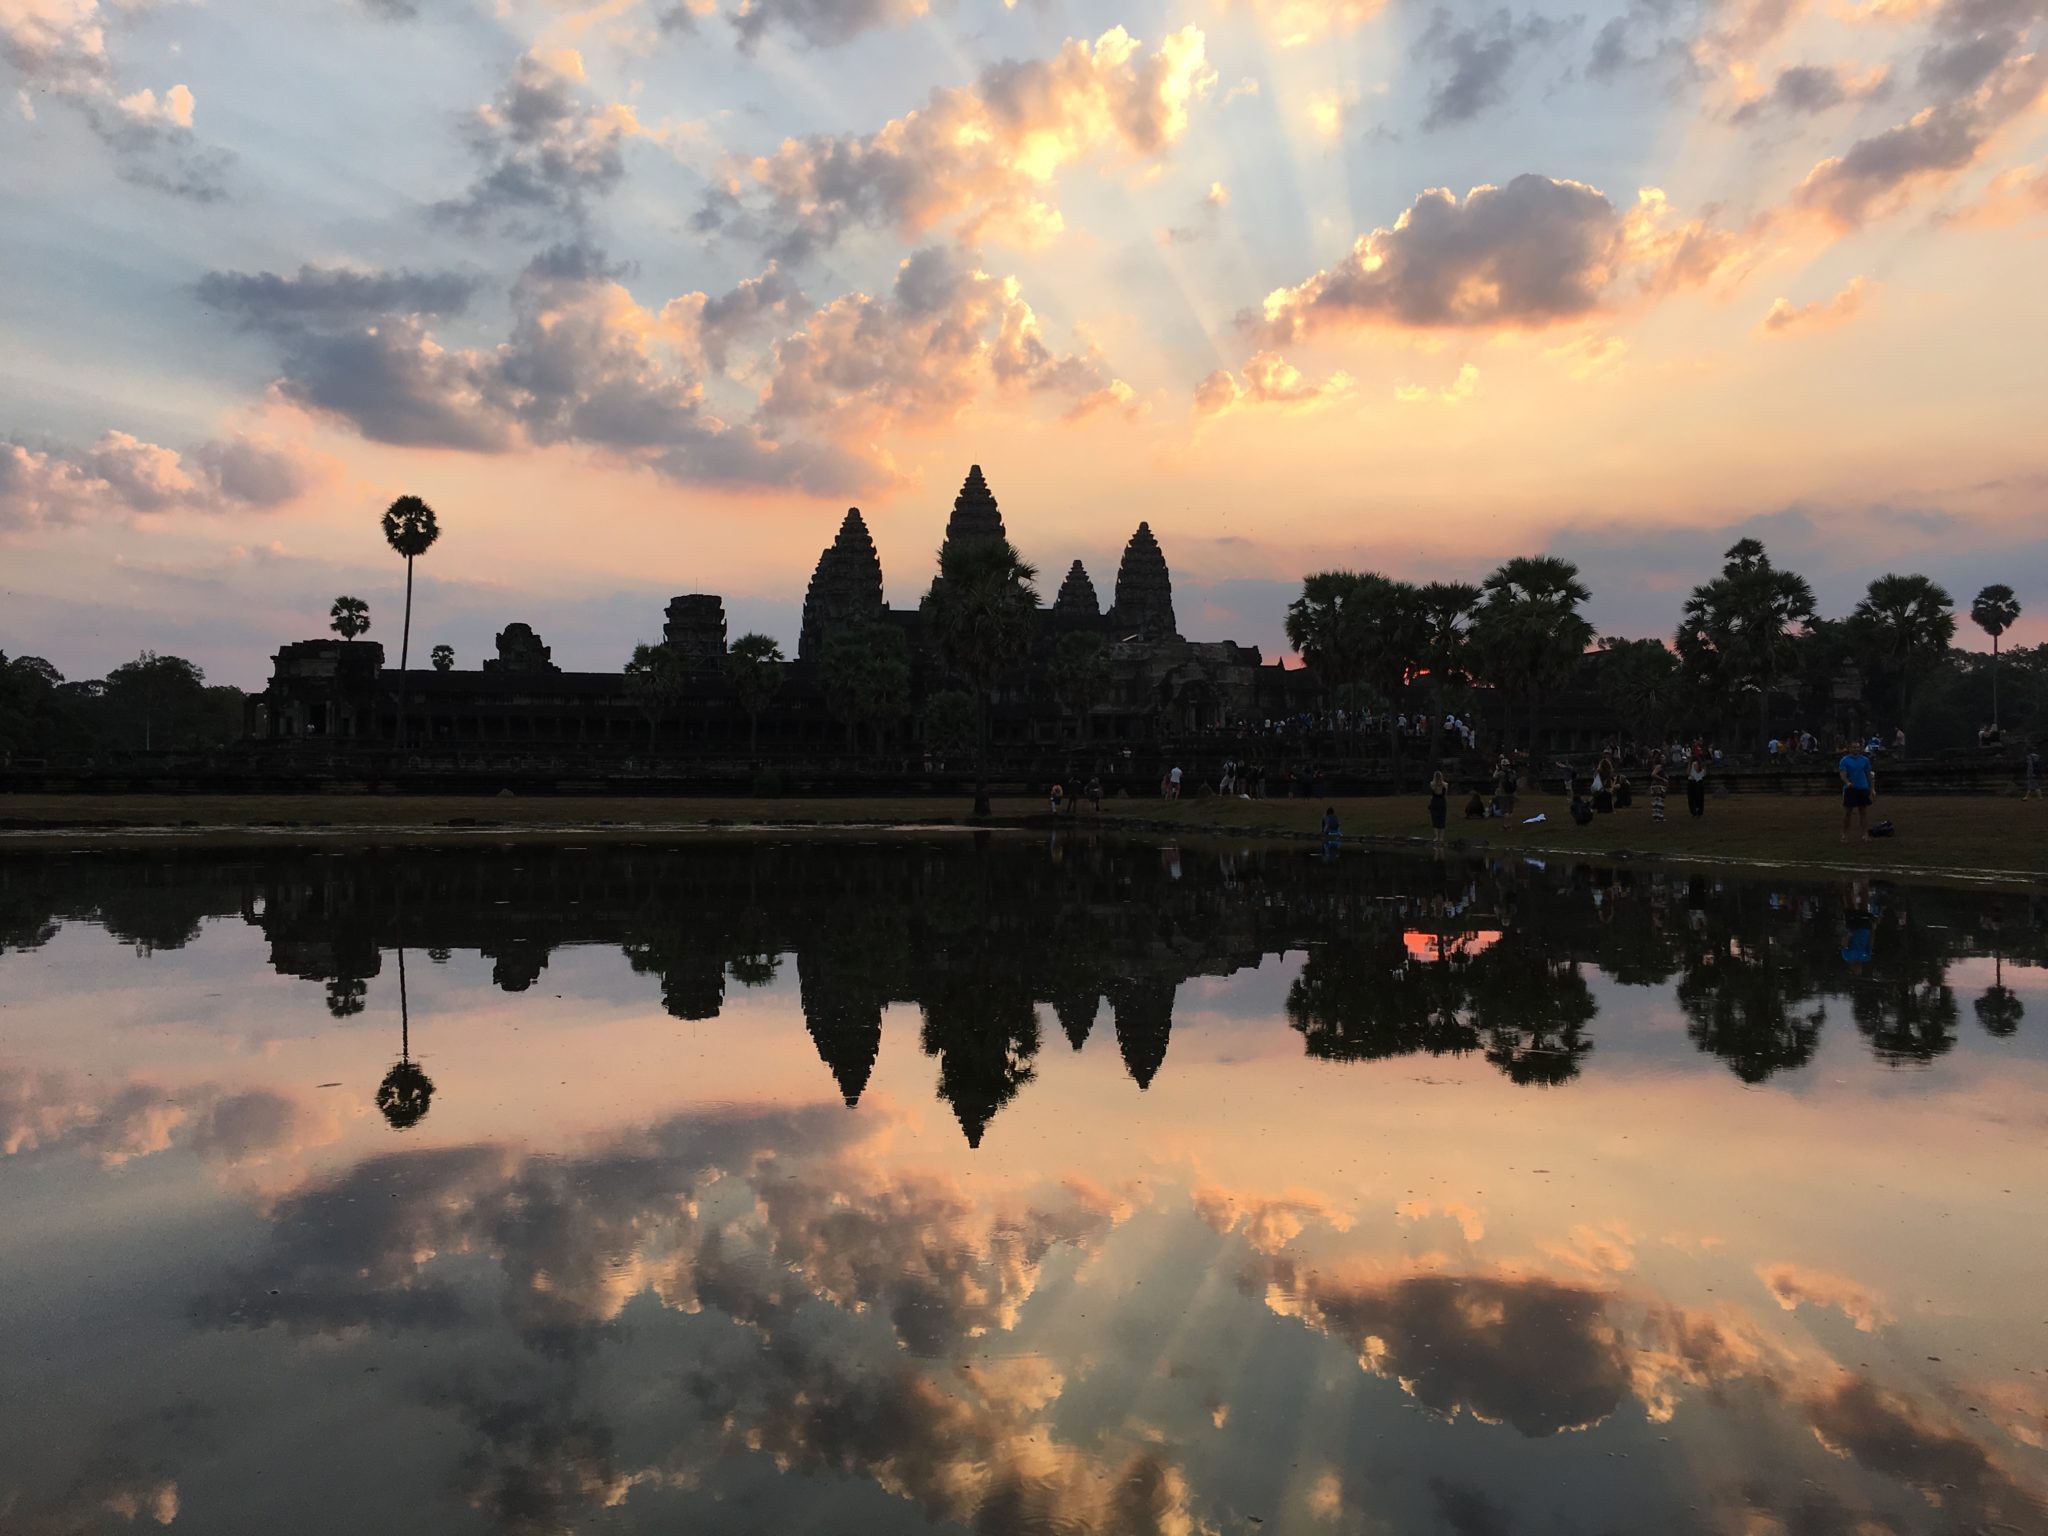 Angkor Wat reflection